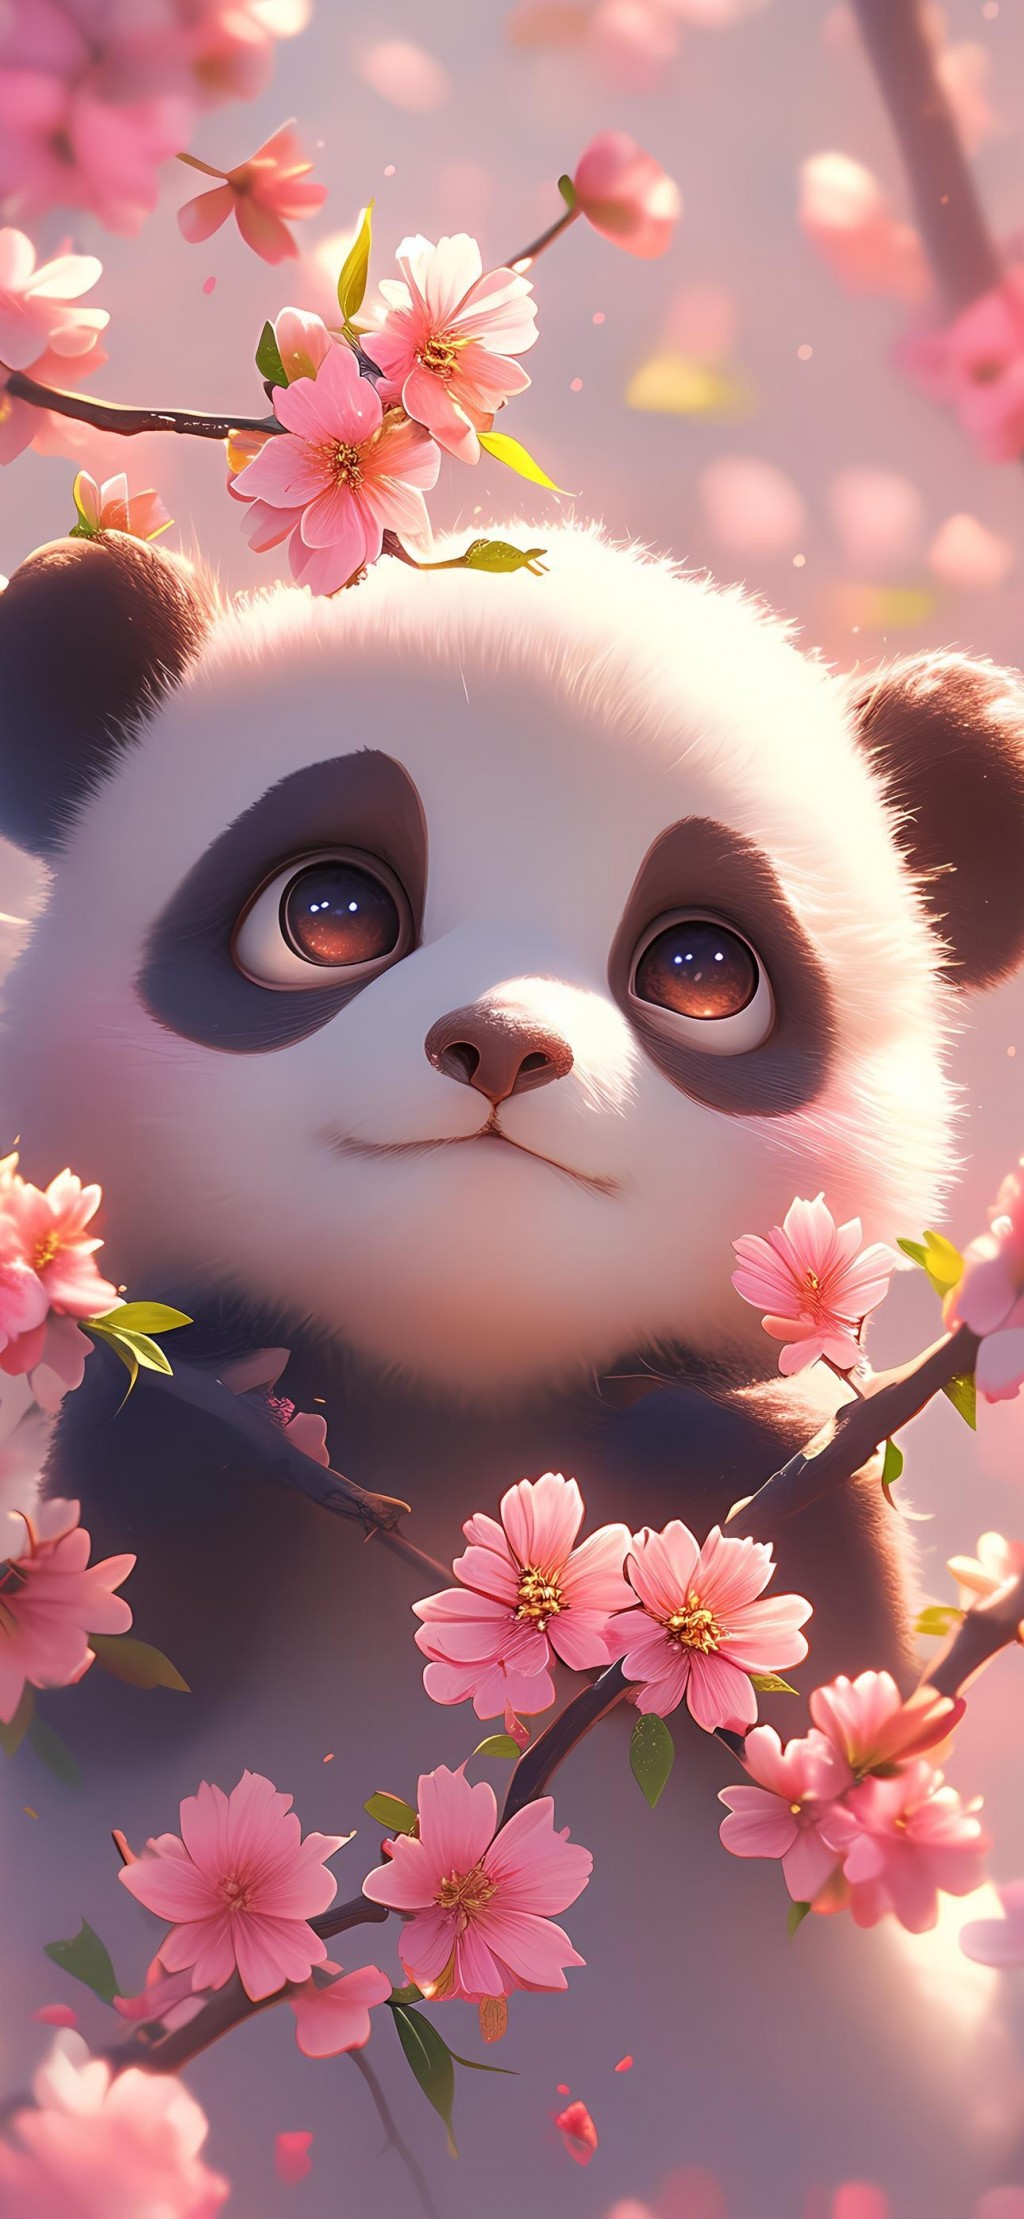 被鲜花包围的熊猫